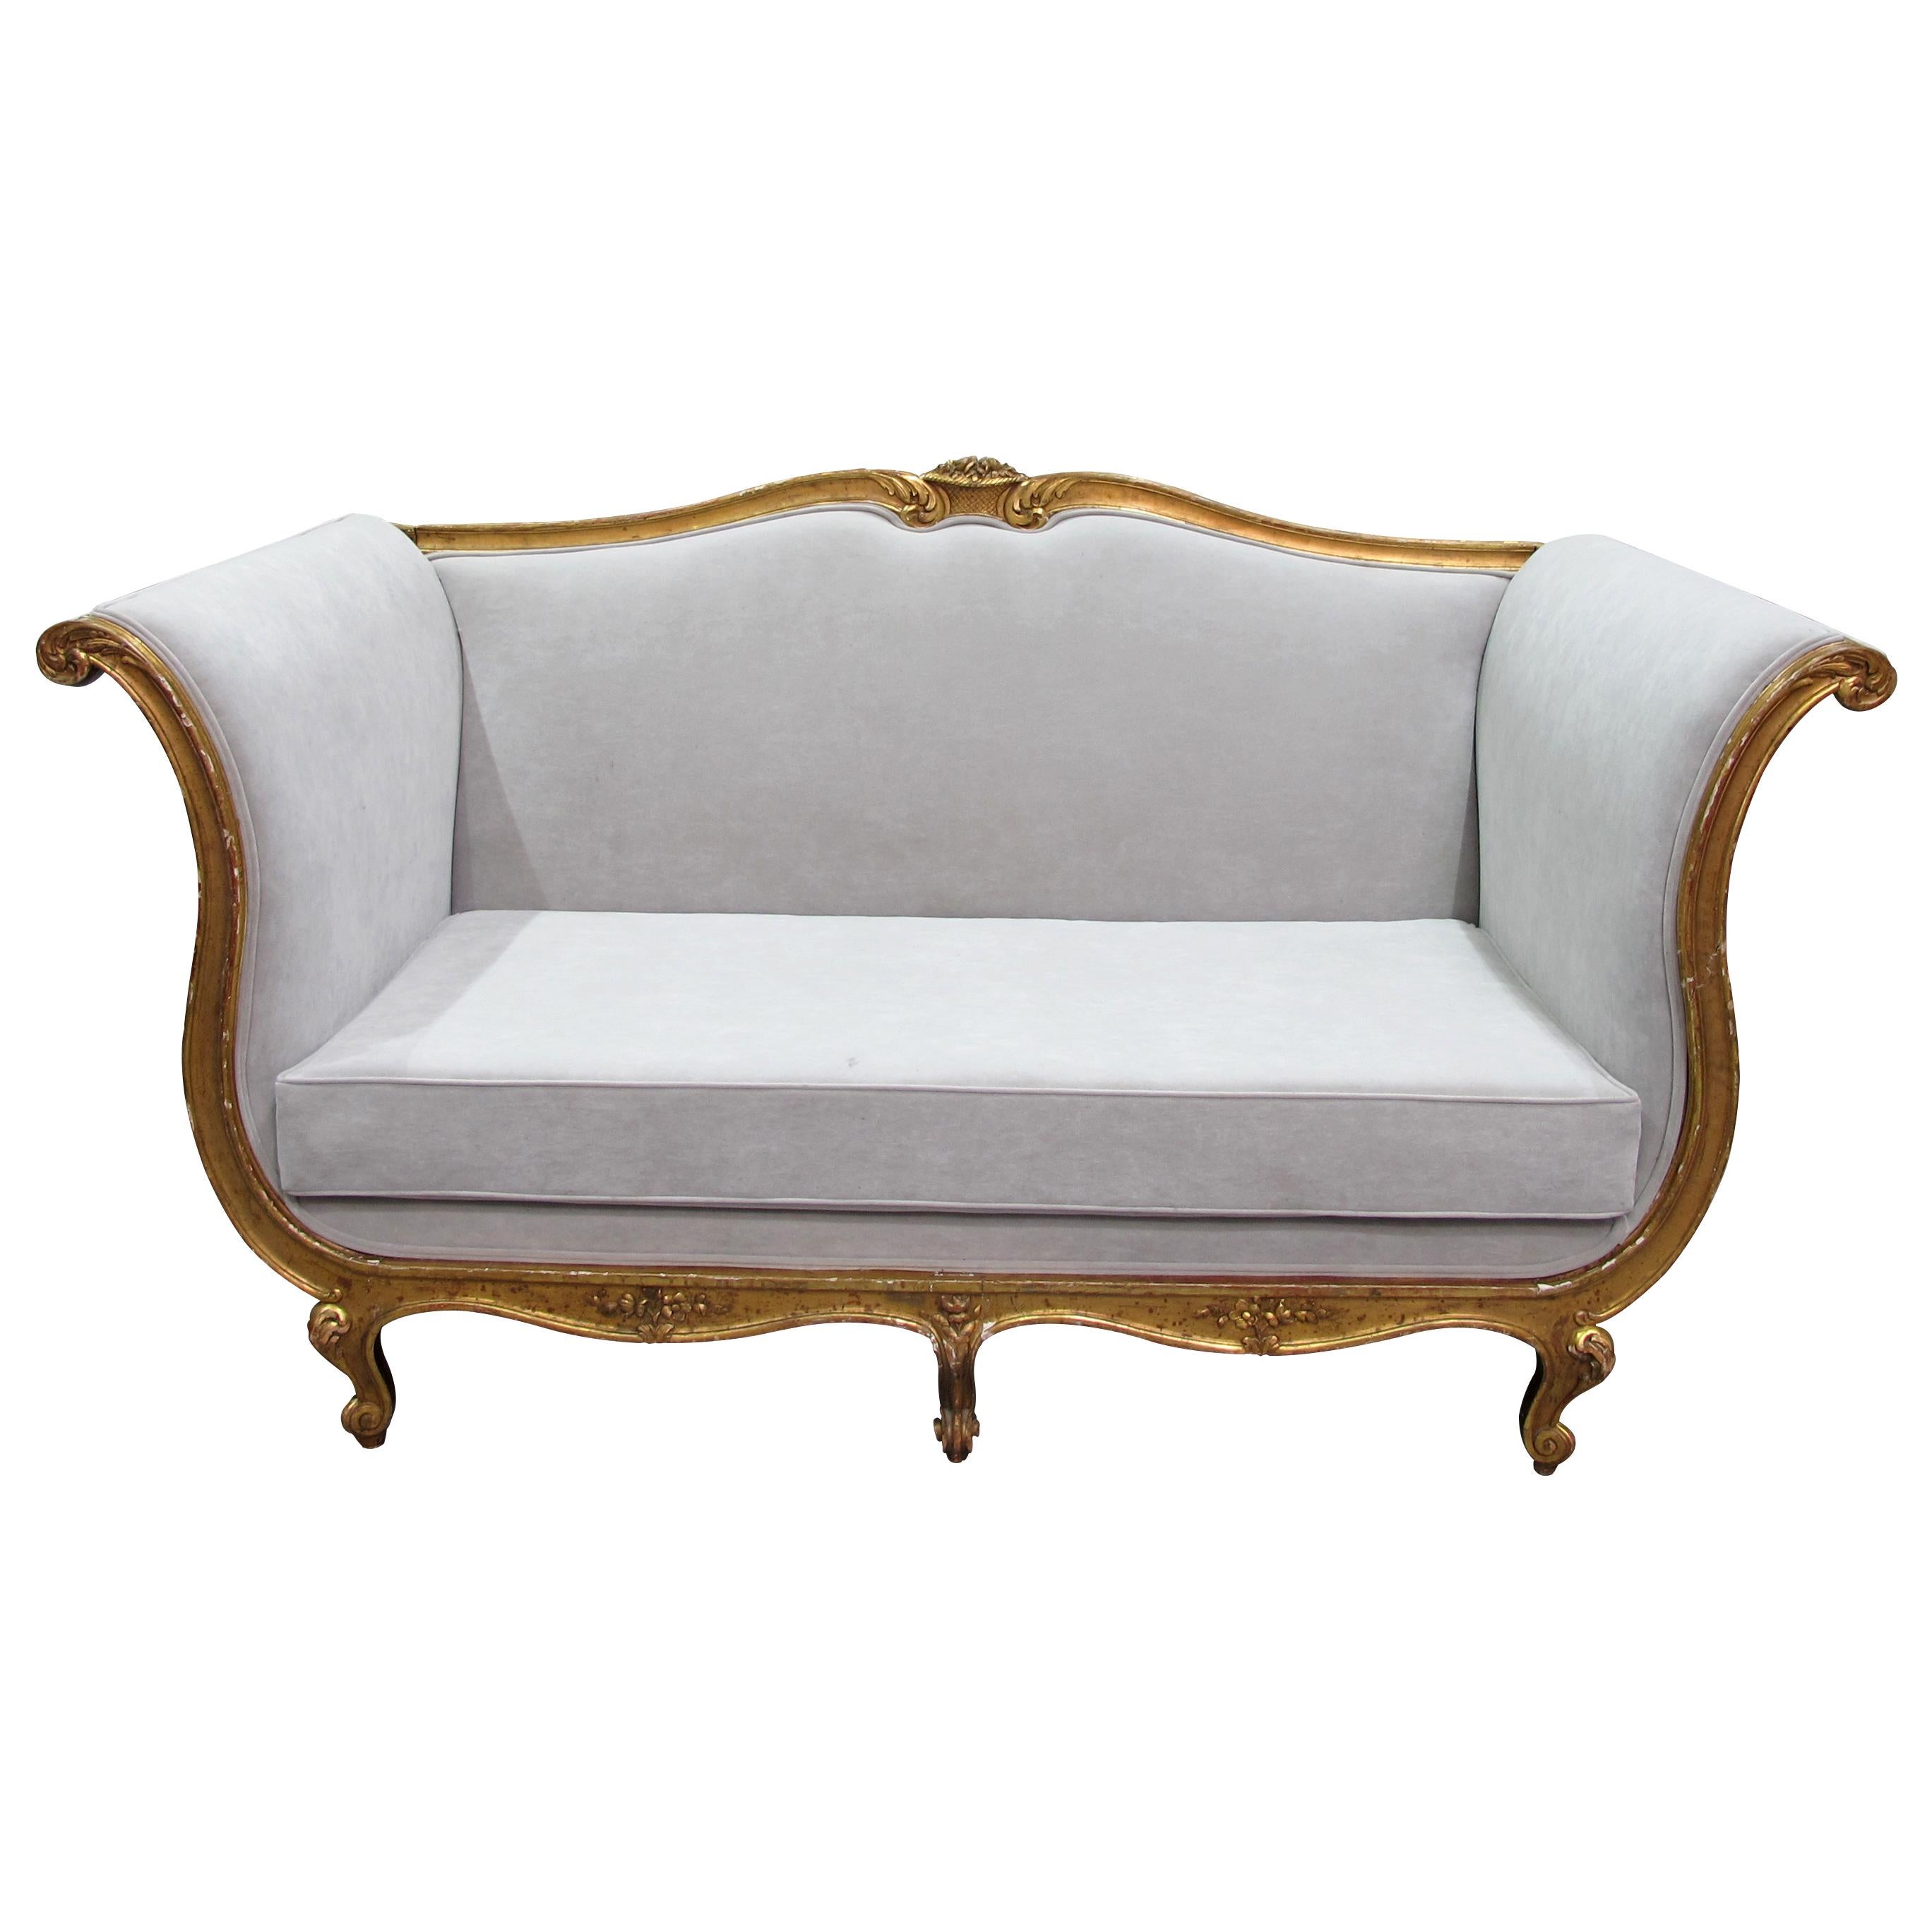 Il s'agit d'un très grand et confortable canapé du 19e siècle, récemment recouvert d'un tissu gris clair résistant et lavable, semblable à du daim. Ce style de mobilier était populaire sous le règne du roi de France Louis XV. Il se caractérise par